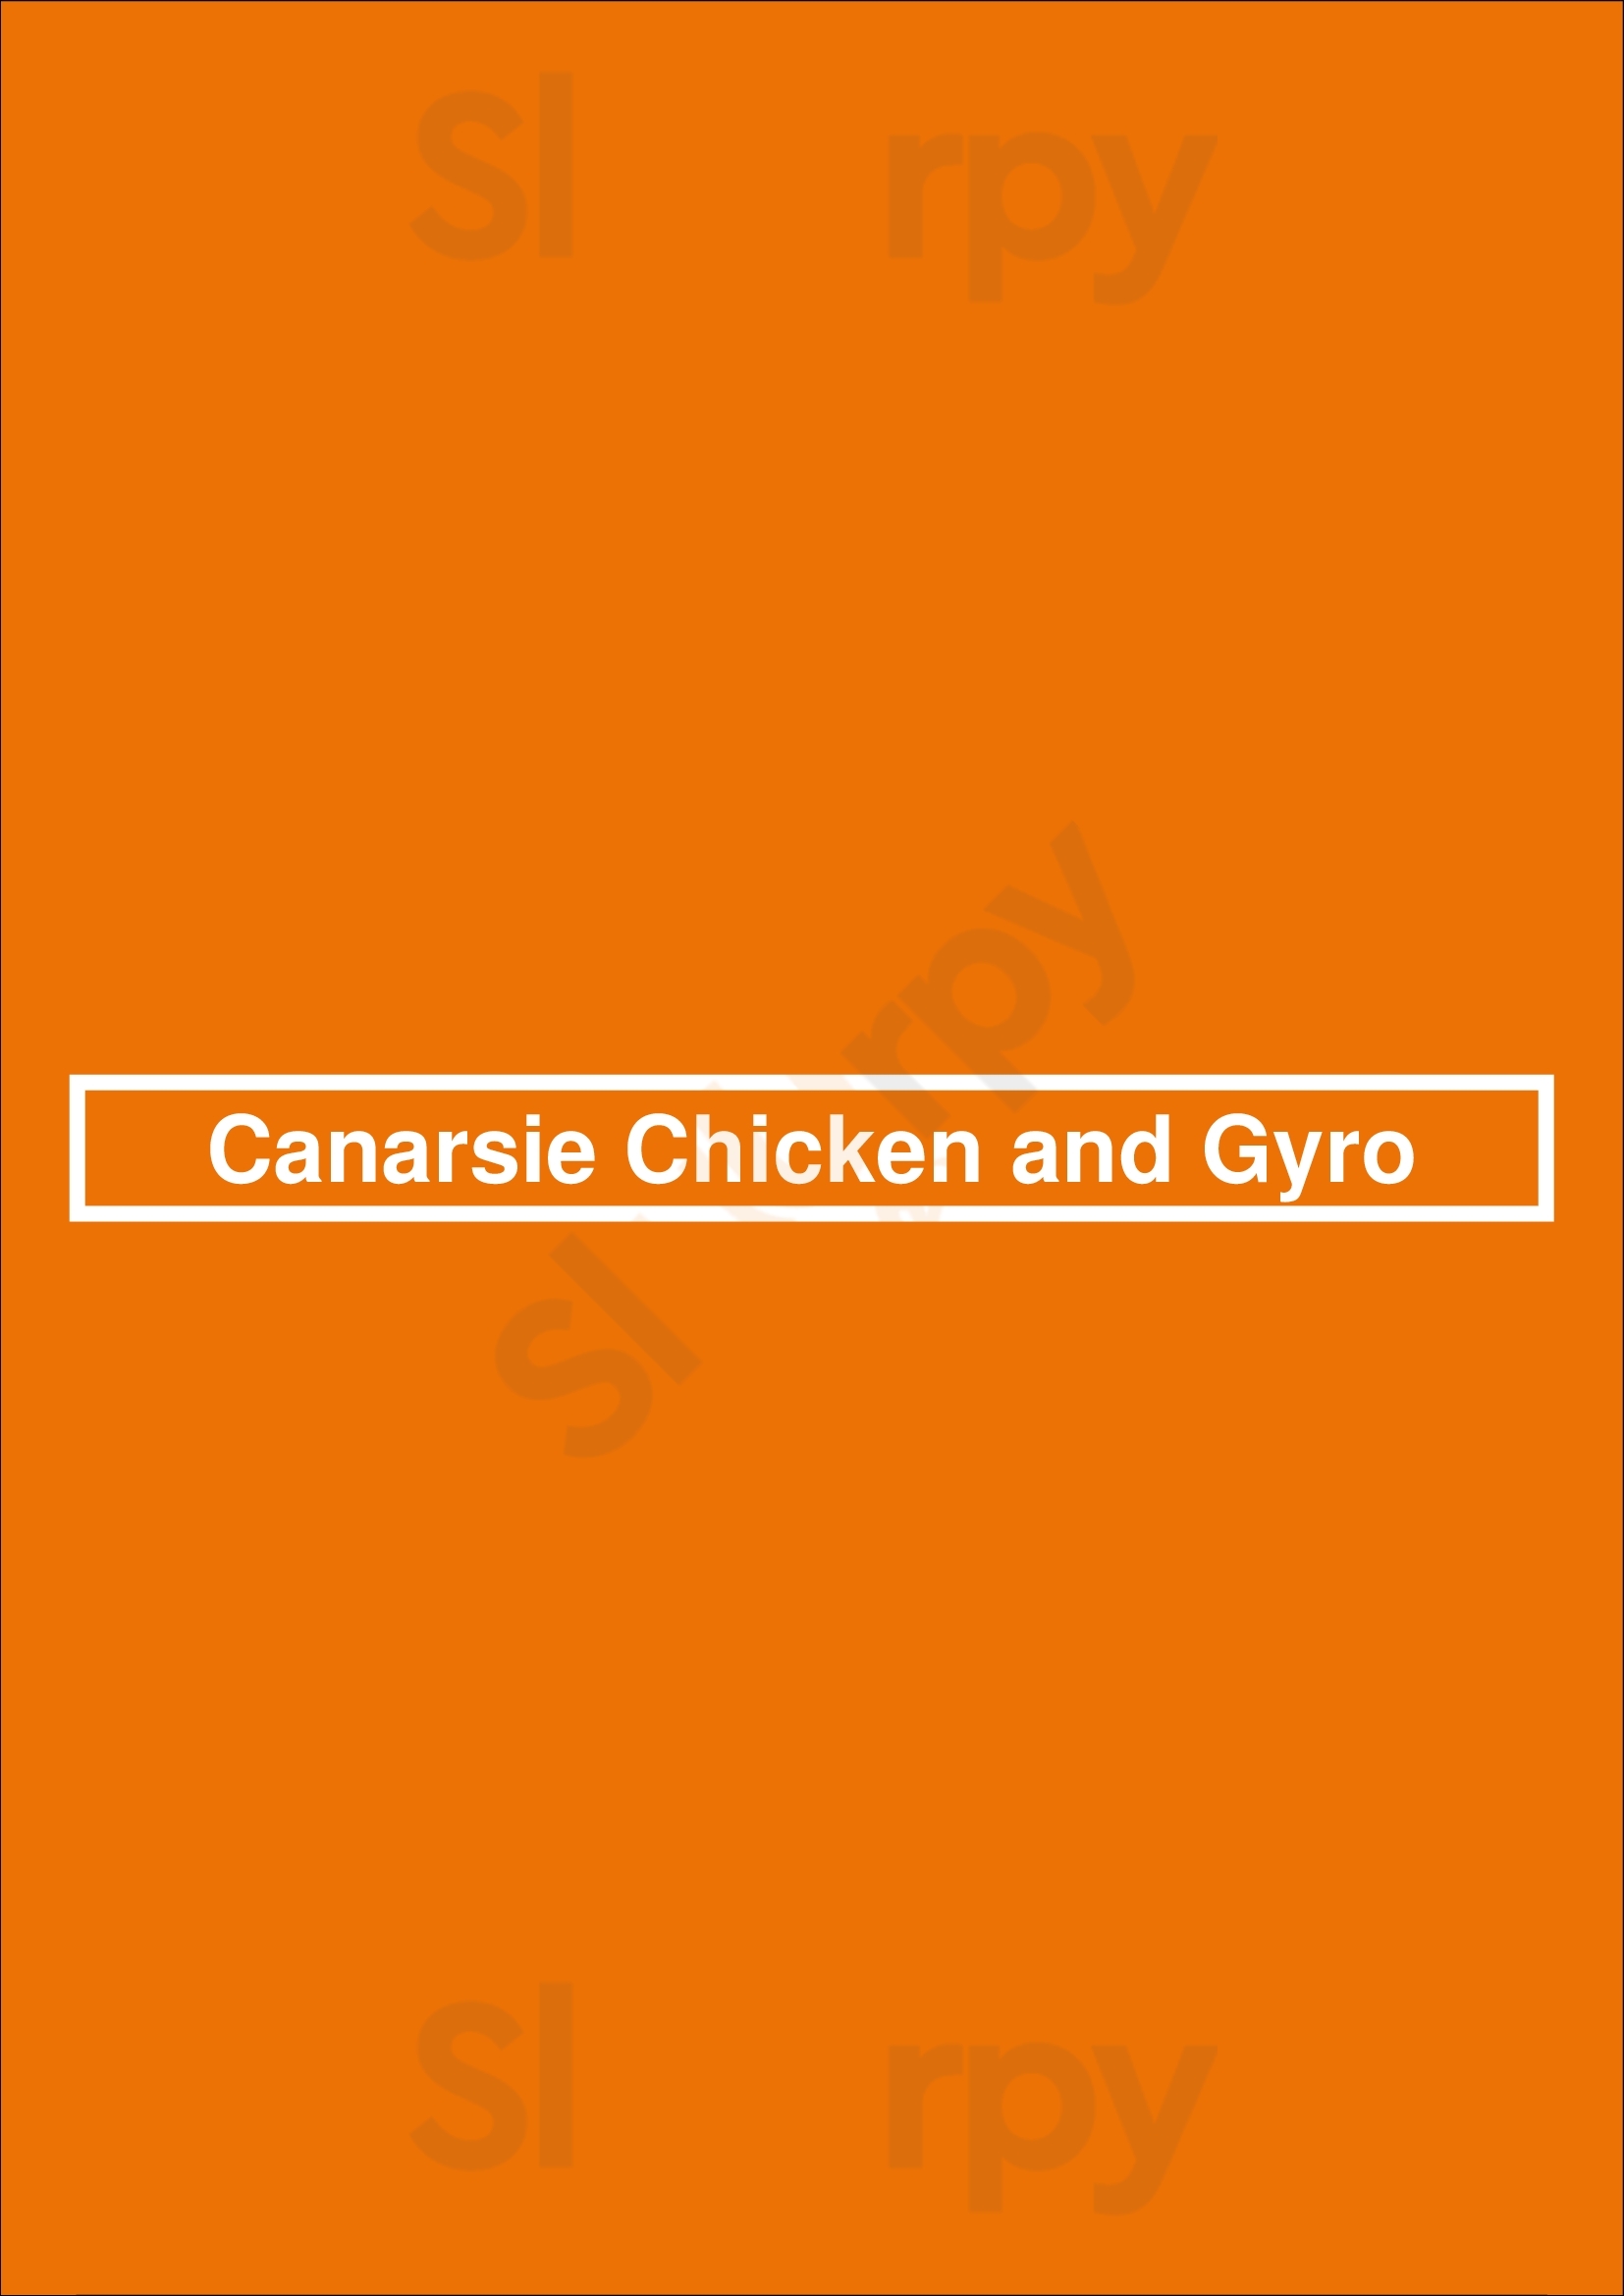 Canarsie Chicken And Gyro Brooklyn Menu - 1